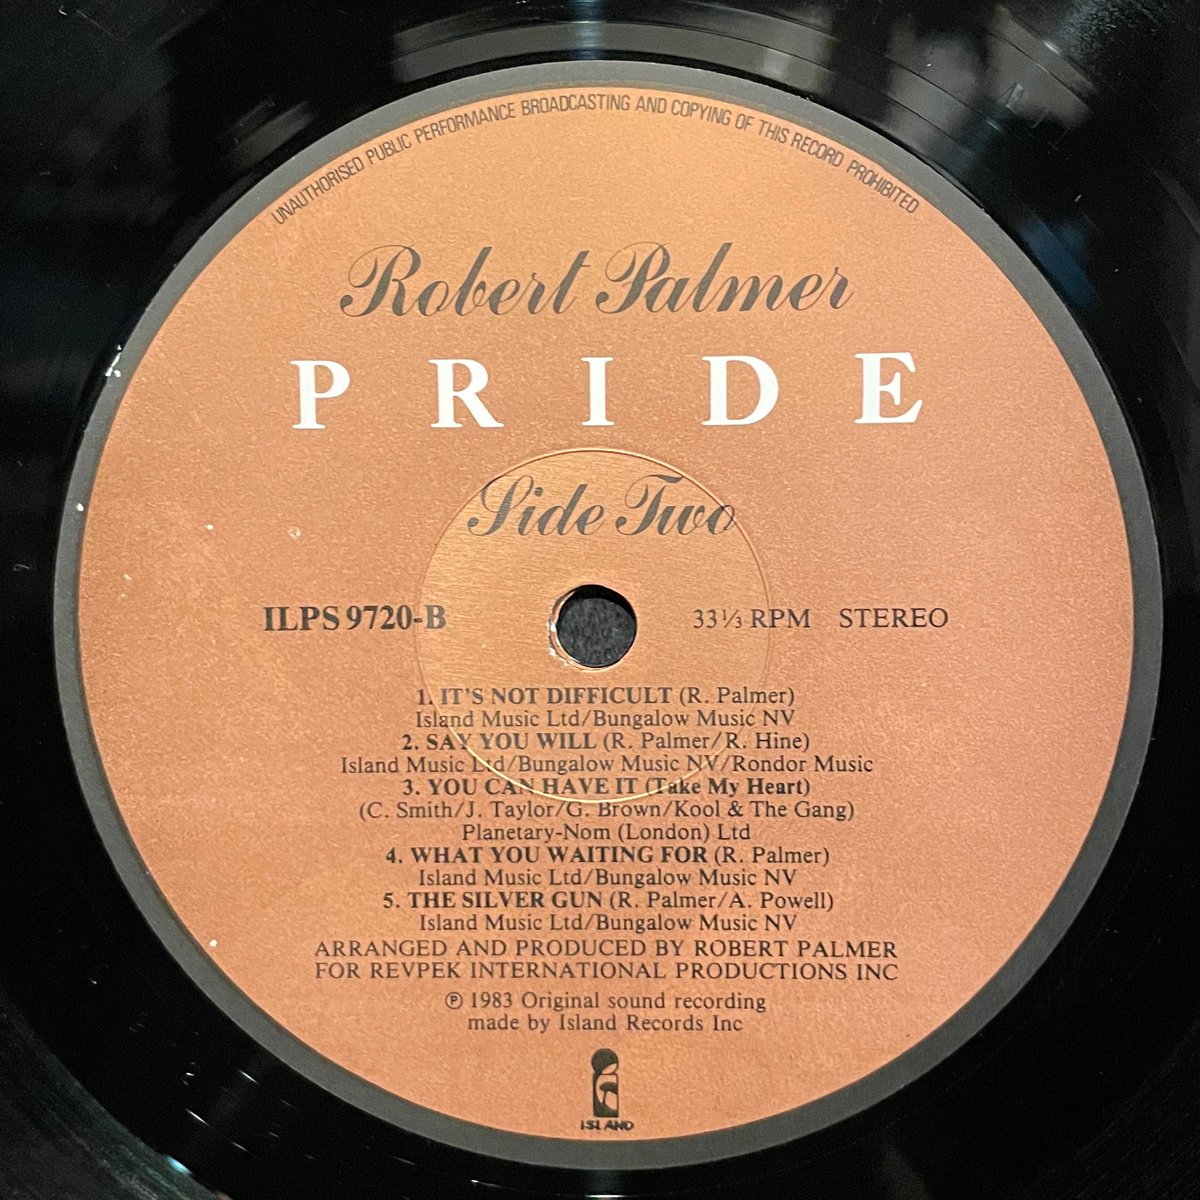 ほなLPいこか
ROBERT PALMER / PRIDE [’83 Island Records --- ILPS 9720]
#RobertPalmer #pride #WhatYouWaitingFor #vinylbar #musicbar #レコードバー #mhc26092023
youtube.com/watch?v=FL95ua…